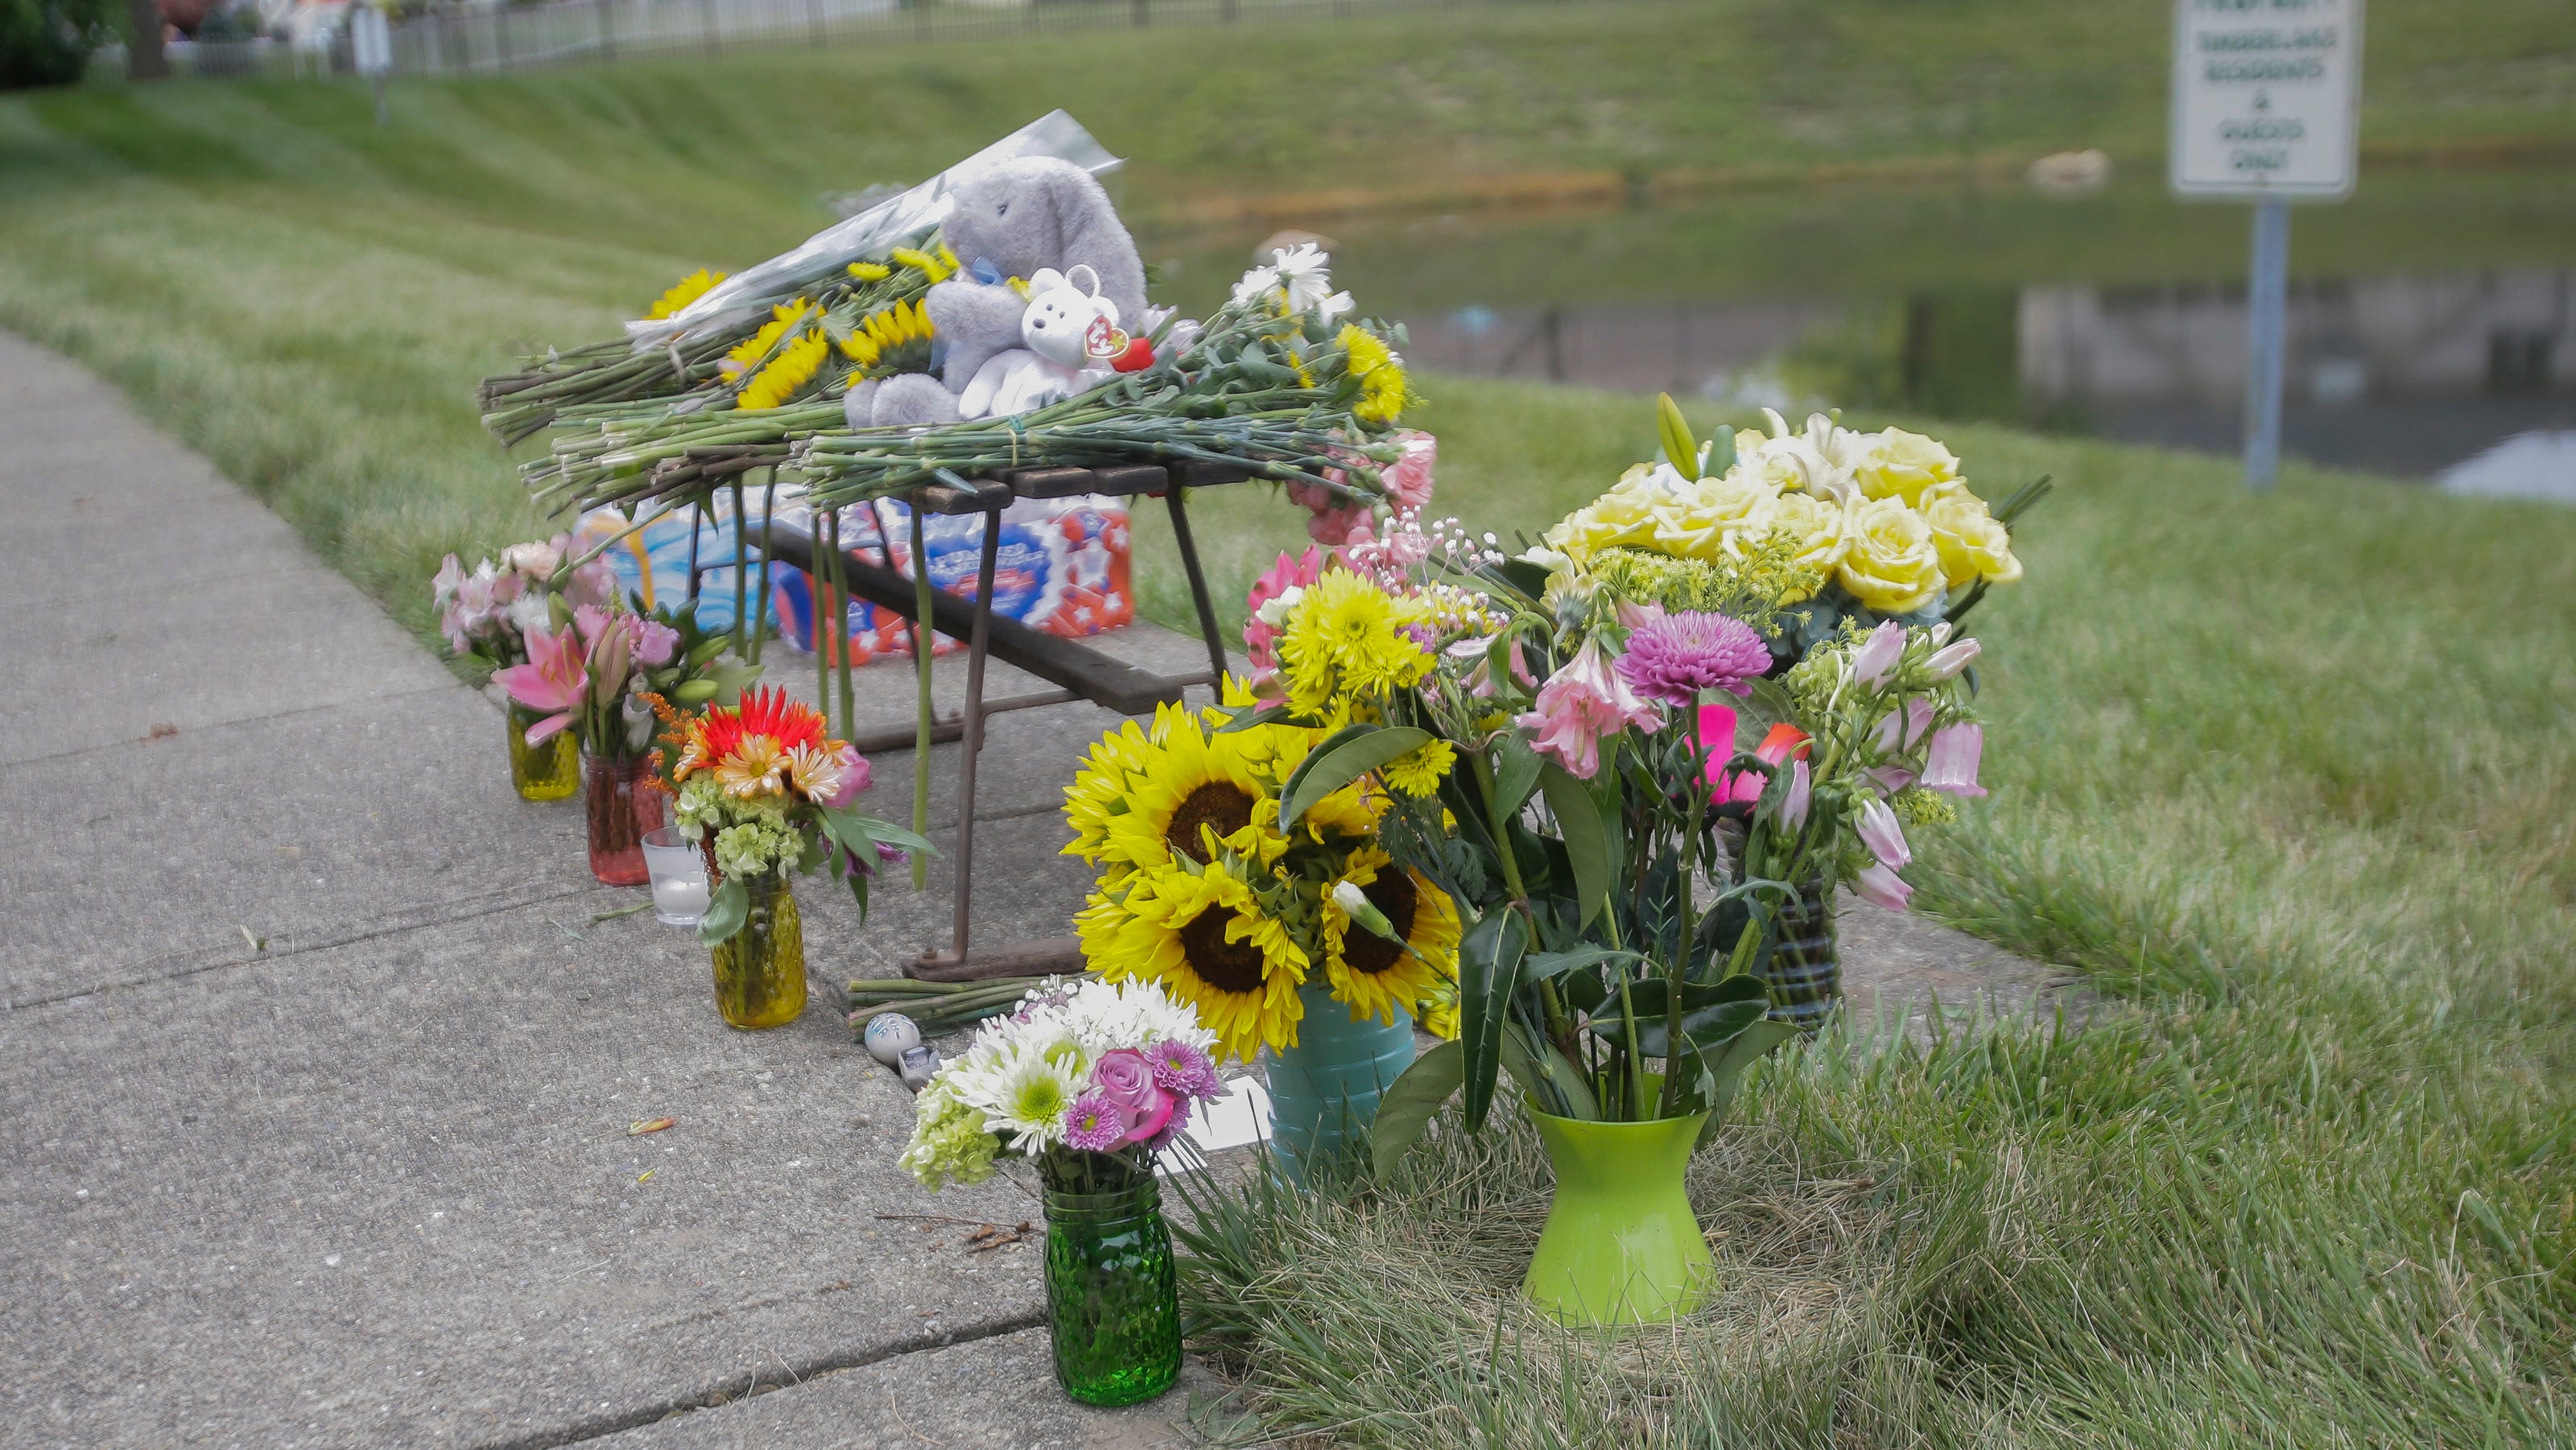 Petition for guardrail begins after crash kills Franklin Central student